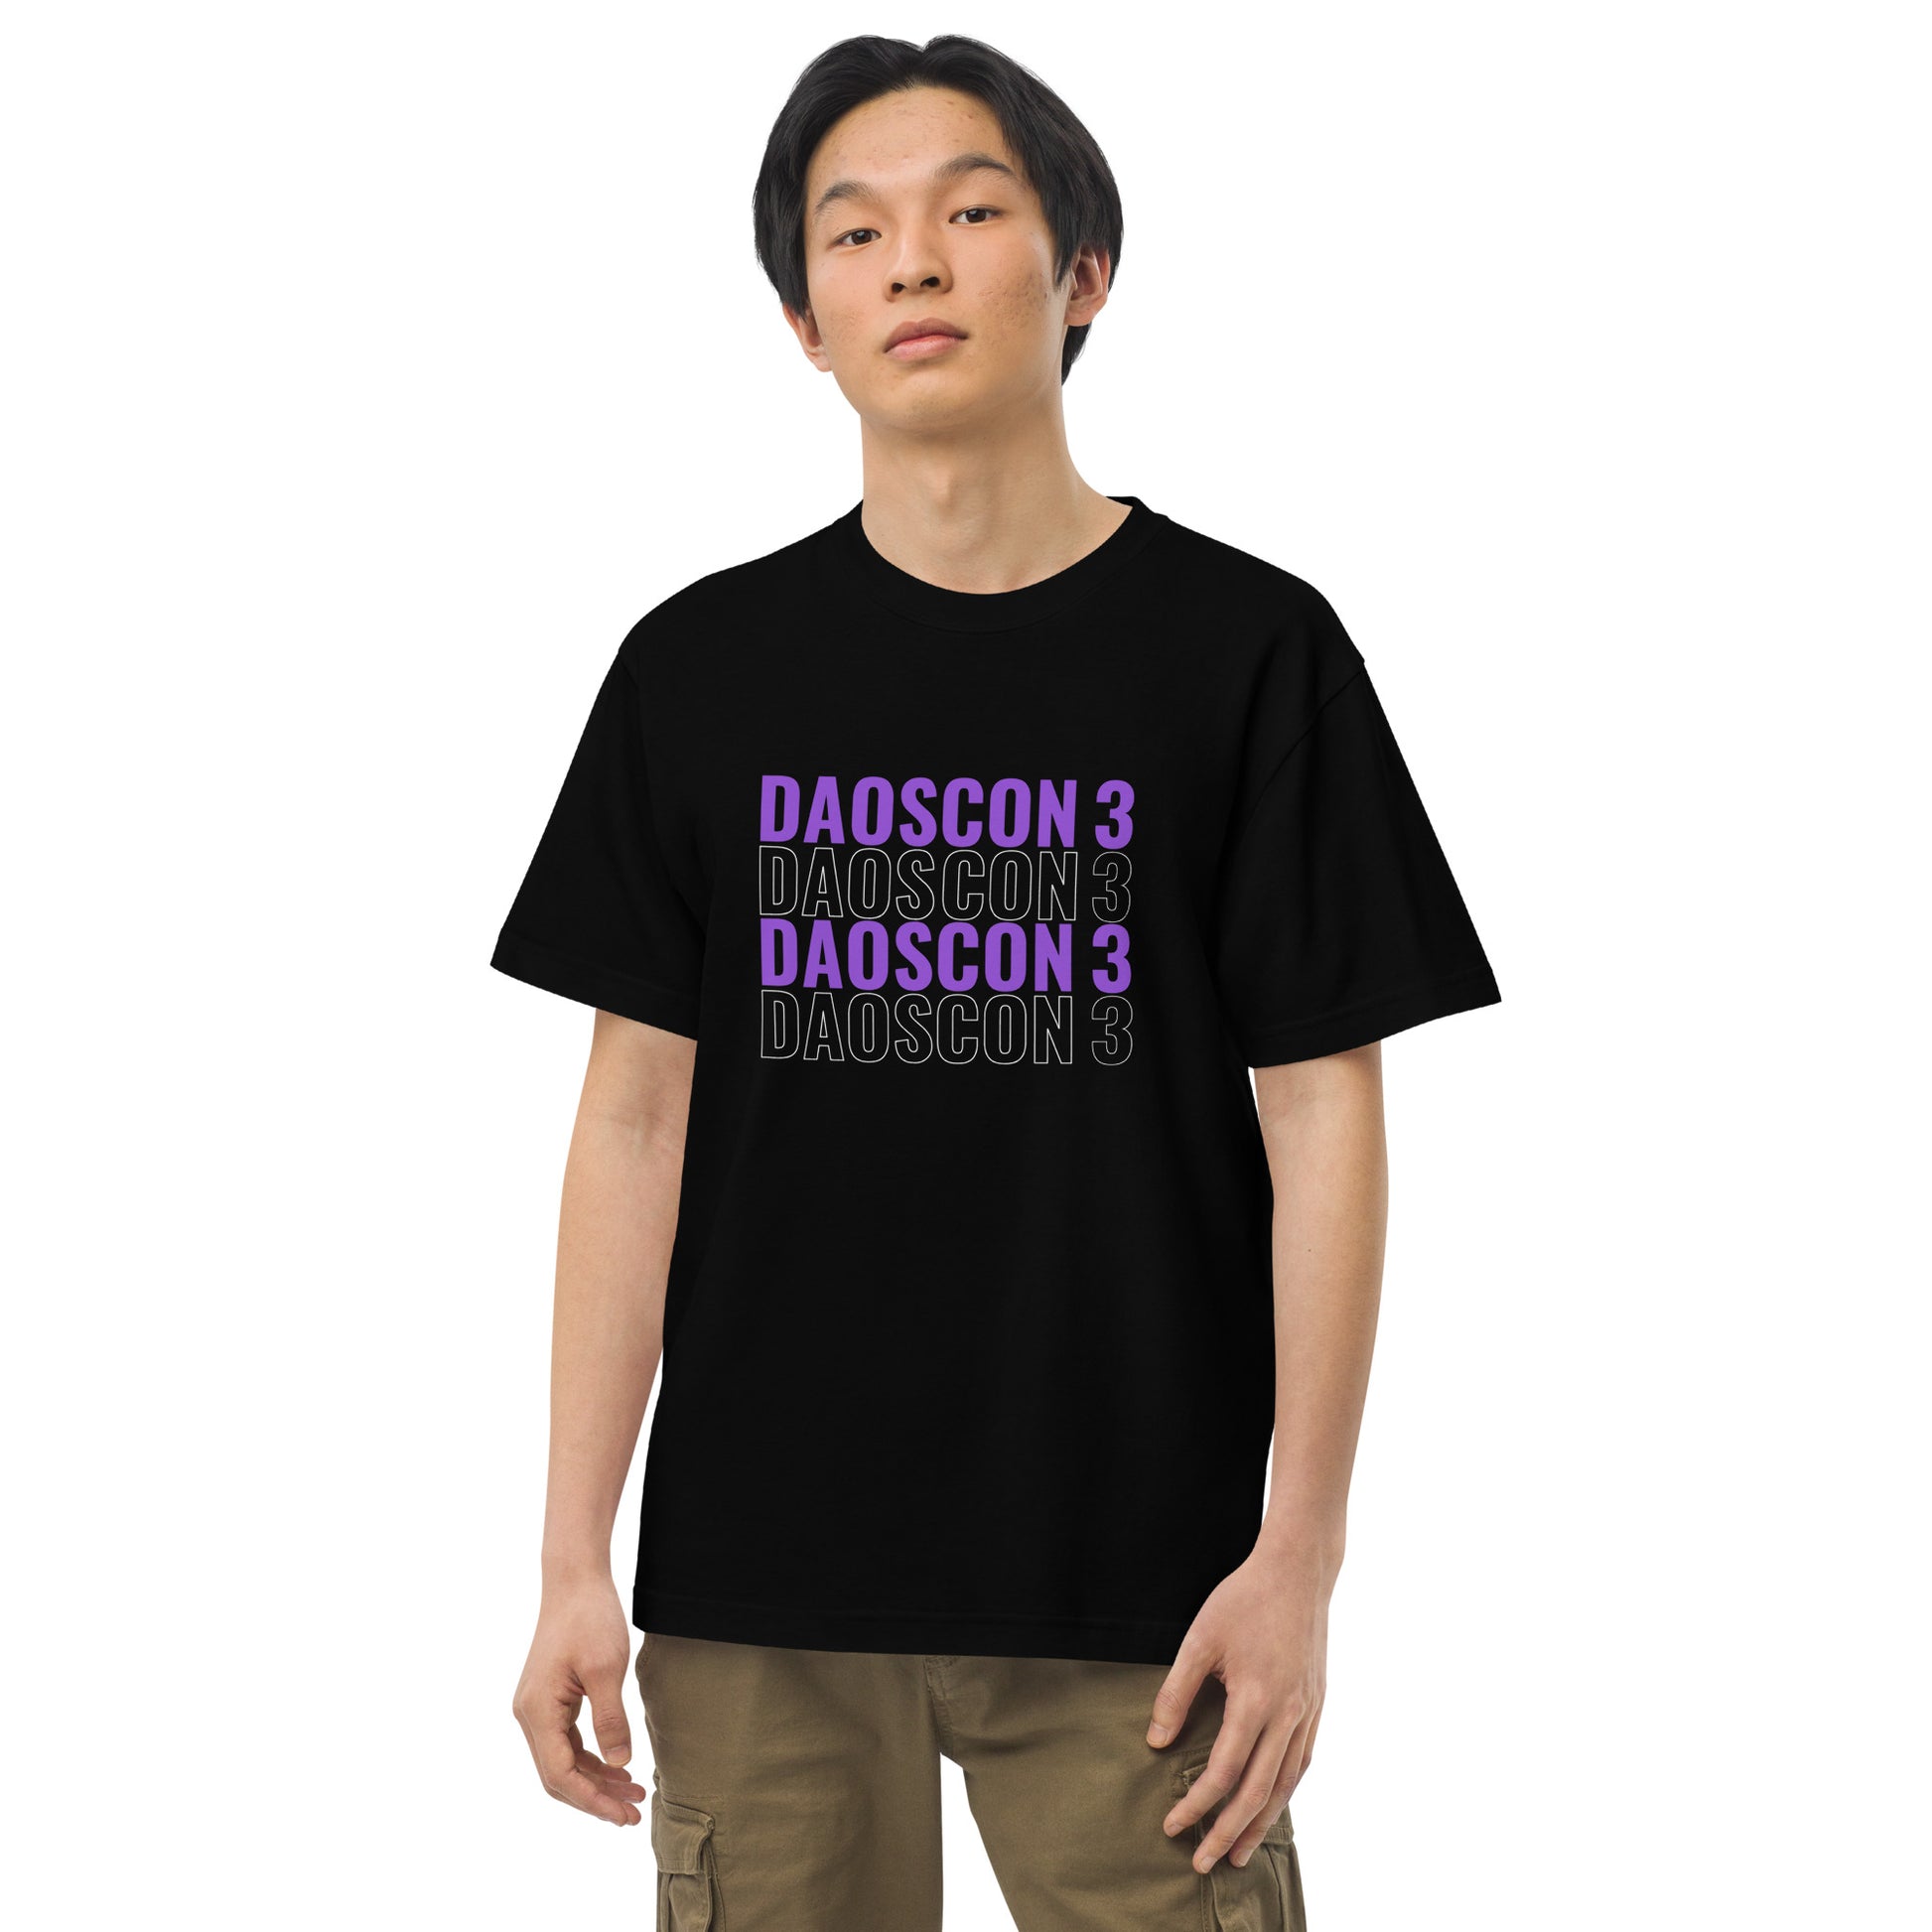 DAOS CON 3 T- Shirt deadlyartofsurvival.com